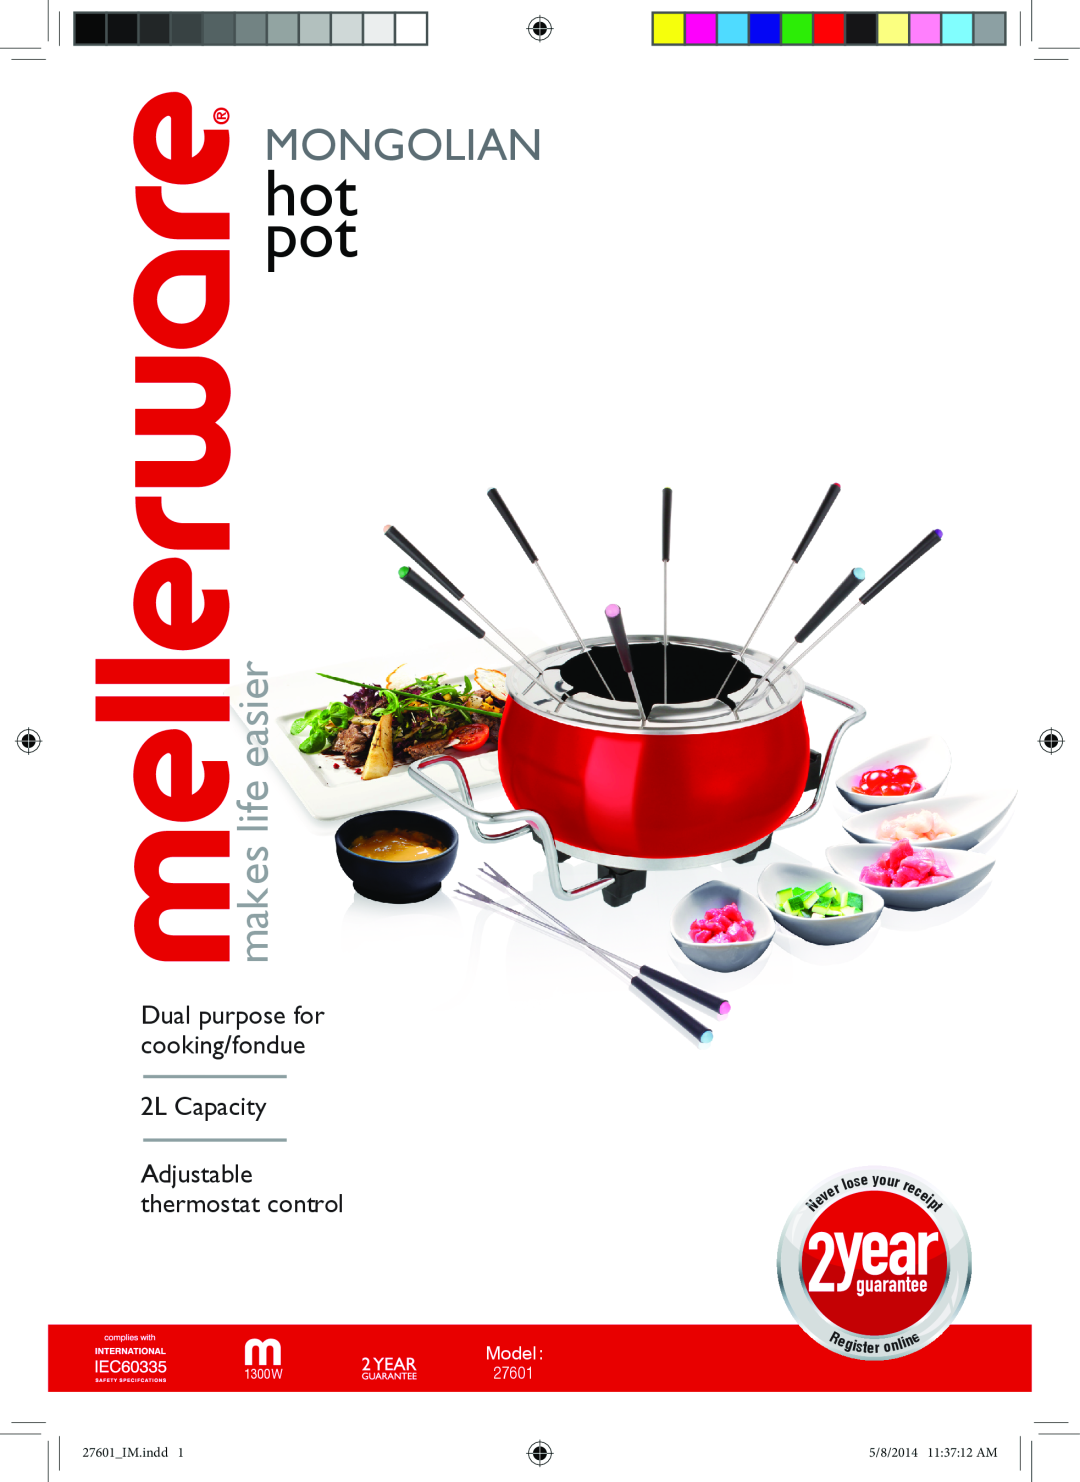 Mellerware 1300W manual hot pot, Mongolian, makes life easier, Dual purpose for cooking/fondue 2L Capacity, Model, 27601 